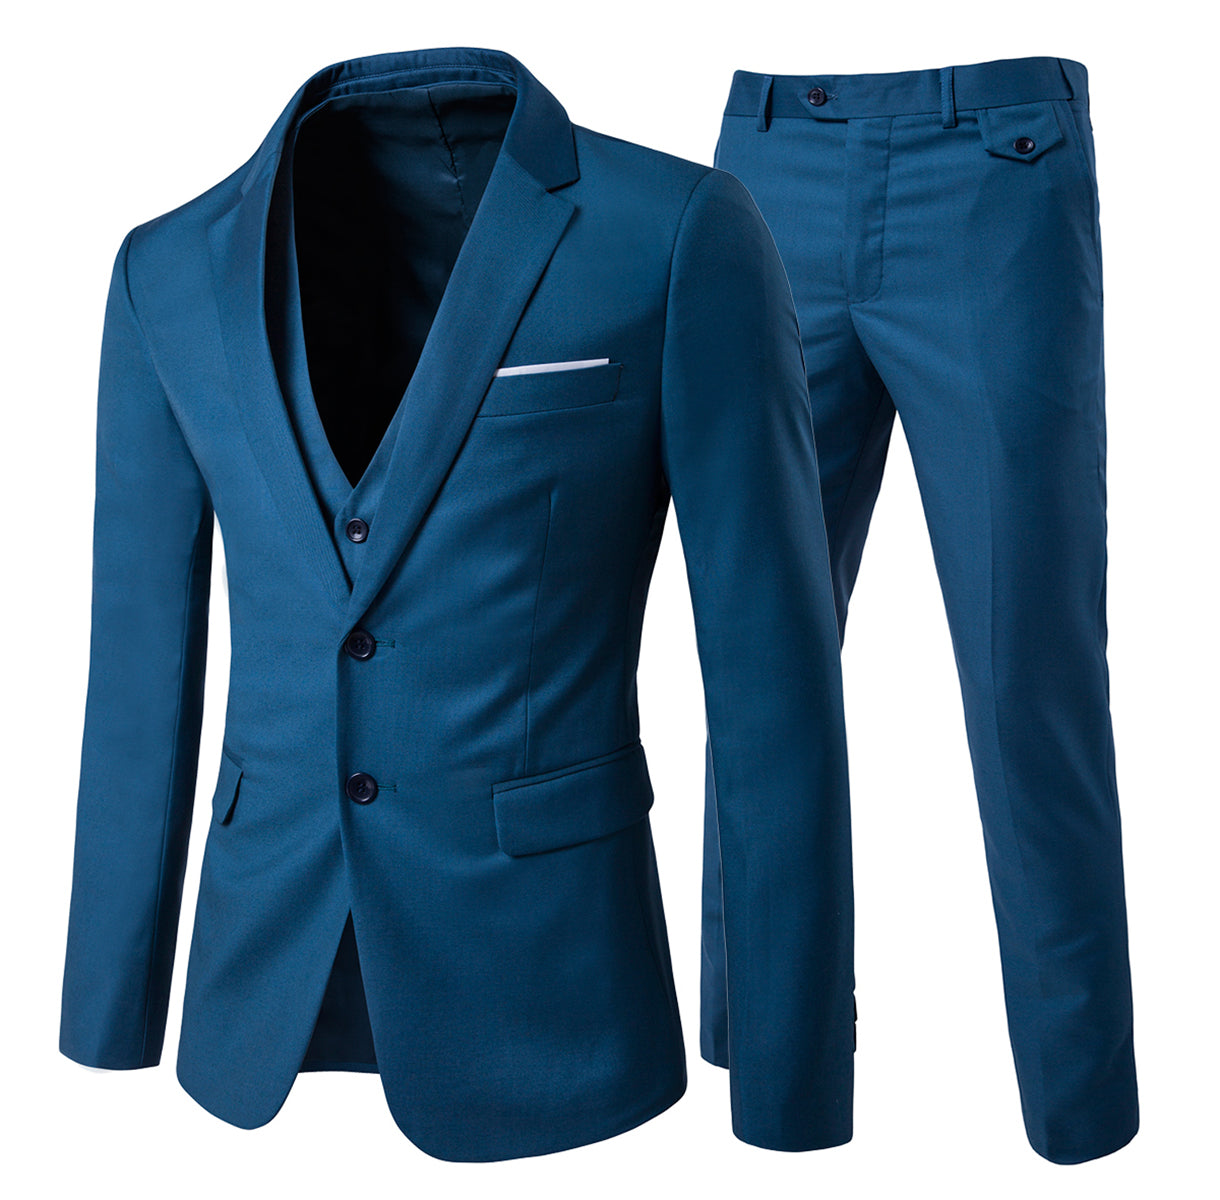 3-Piece Notched Lapel Casual Suit 9 Colors - Cloudstyle